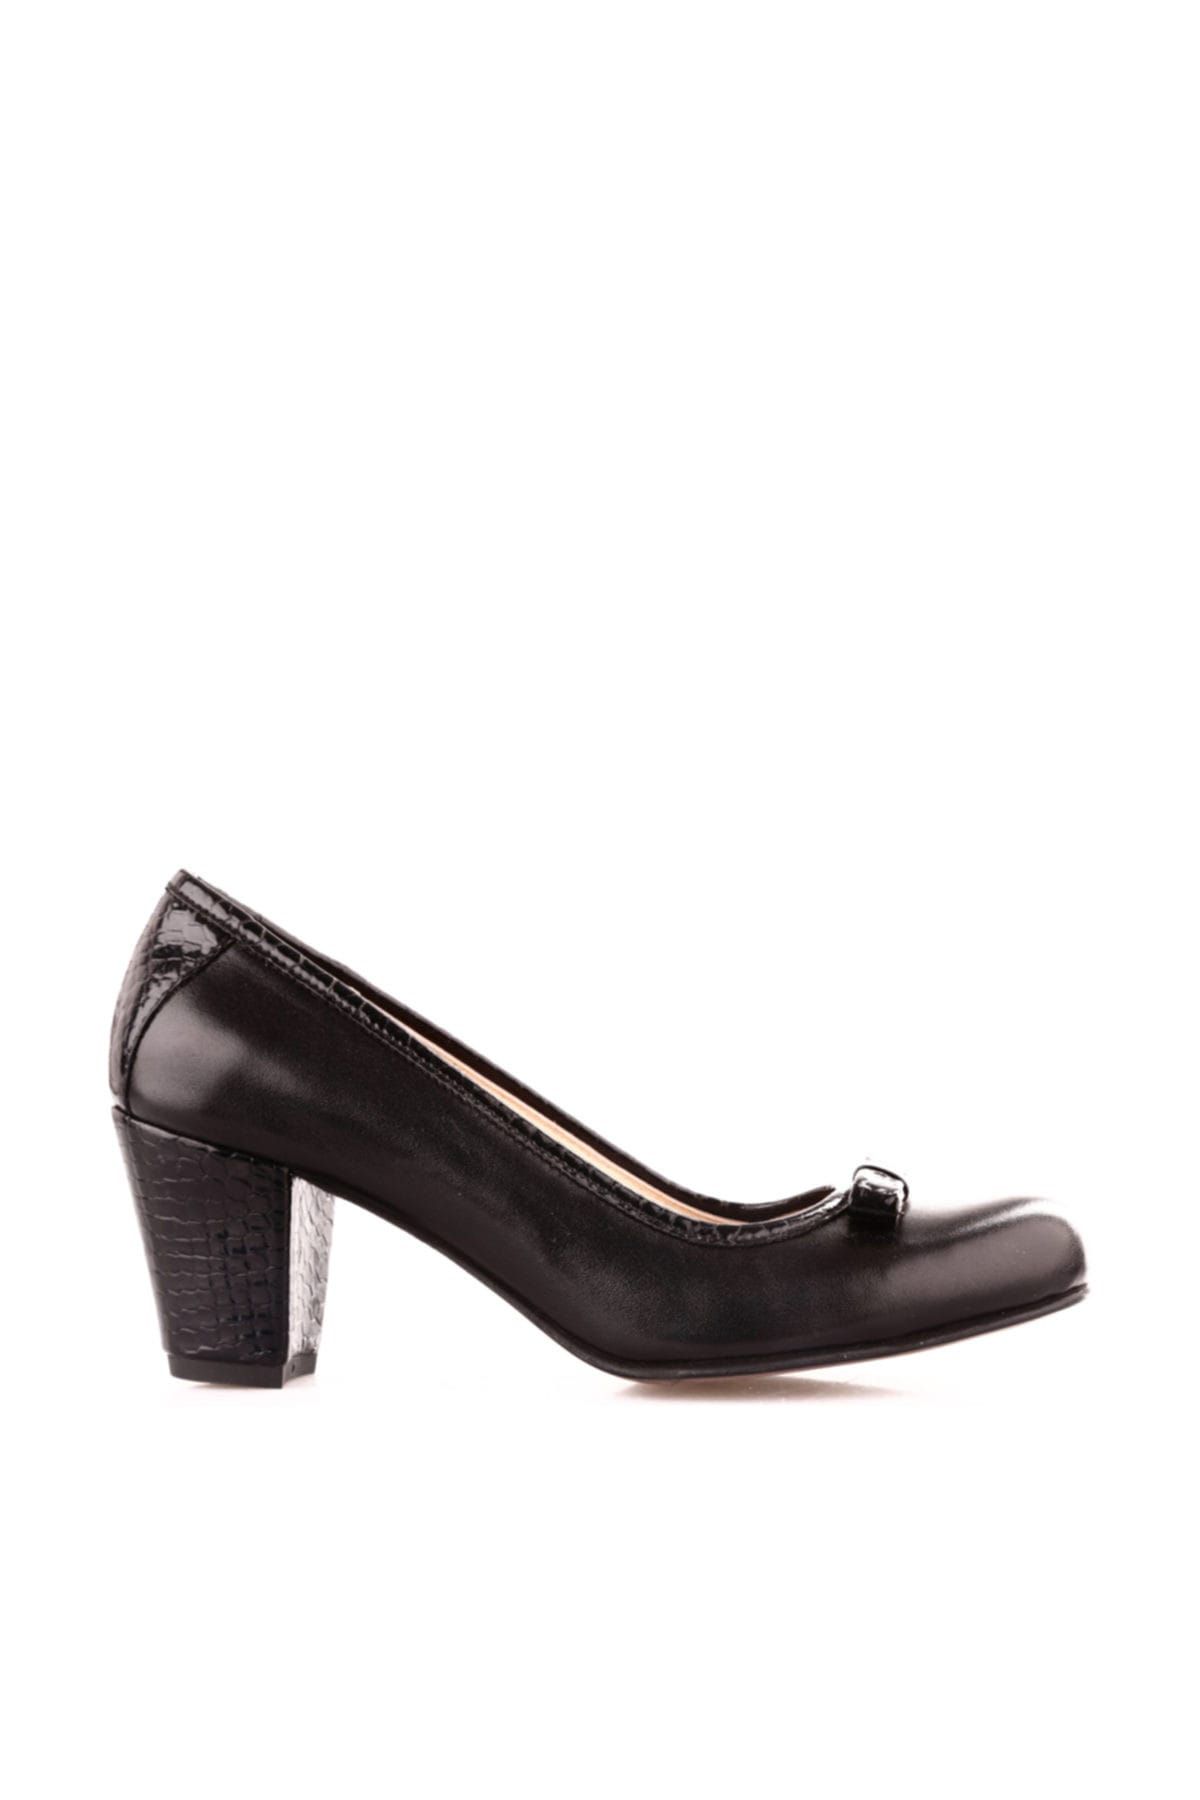 Dgn Siyah Kadın Klasik Topuklu Ayakkabı 295-148